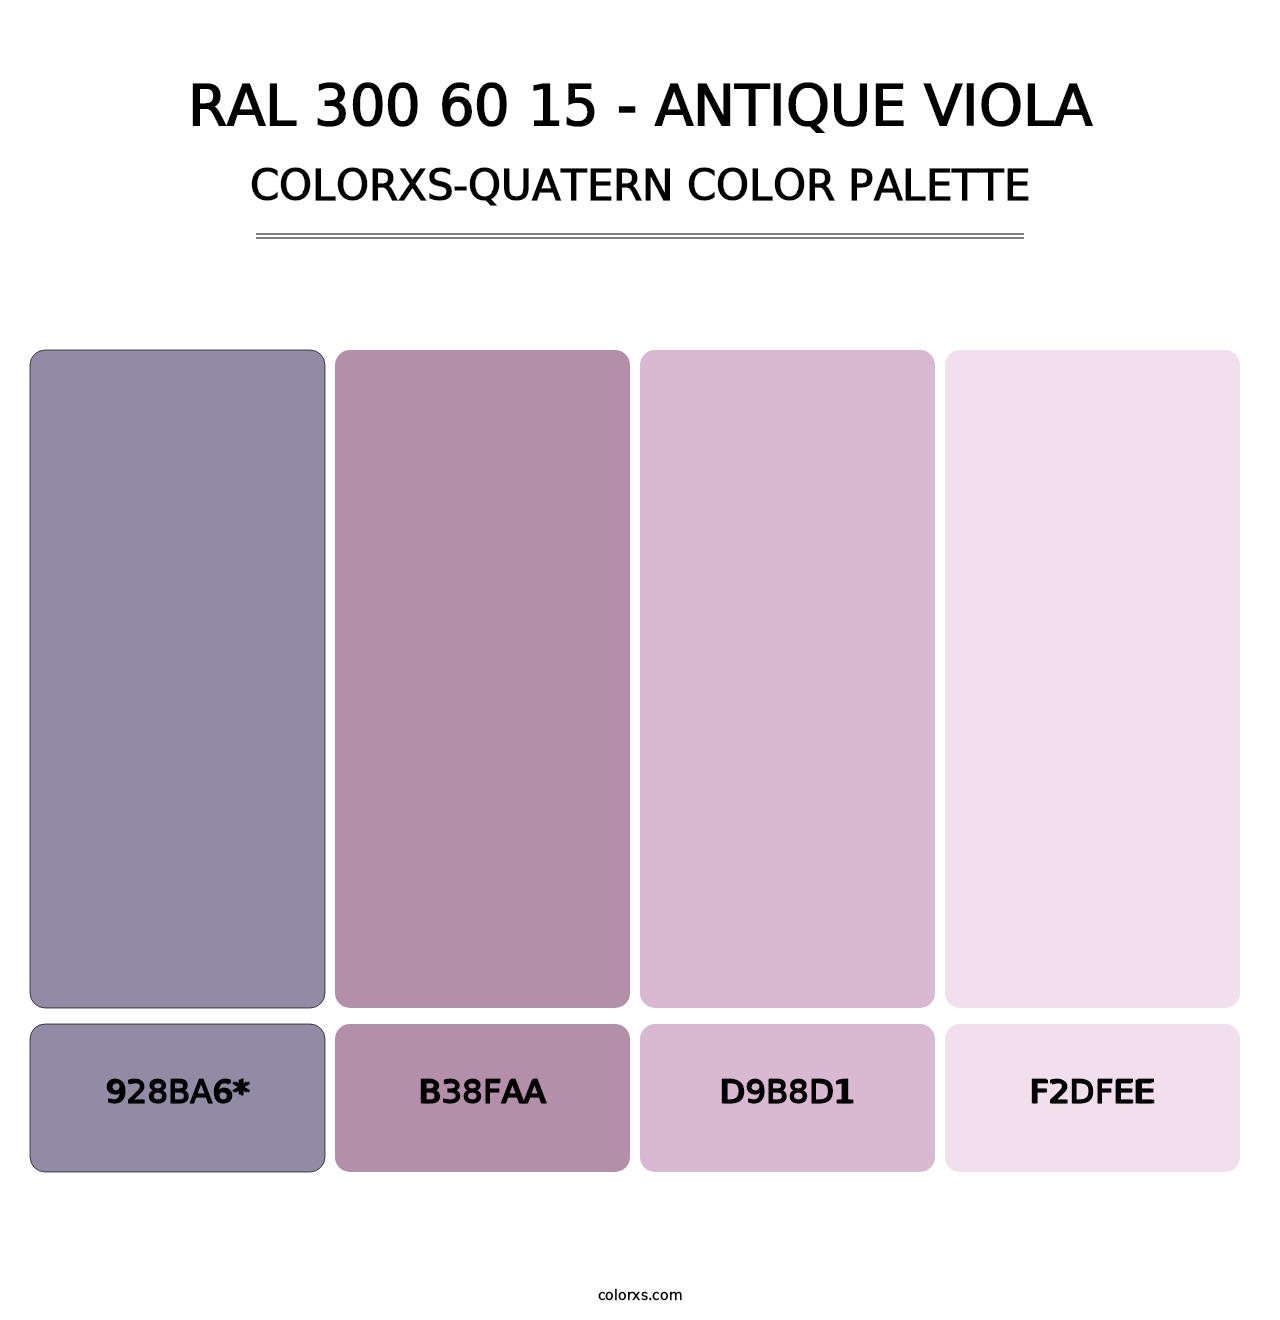 RAL 300 60 15 - Antique Viola - Colorxs Quatern Palette